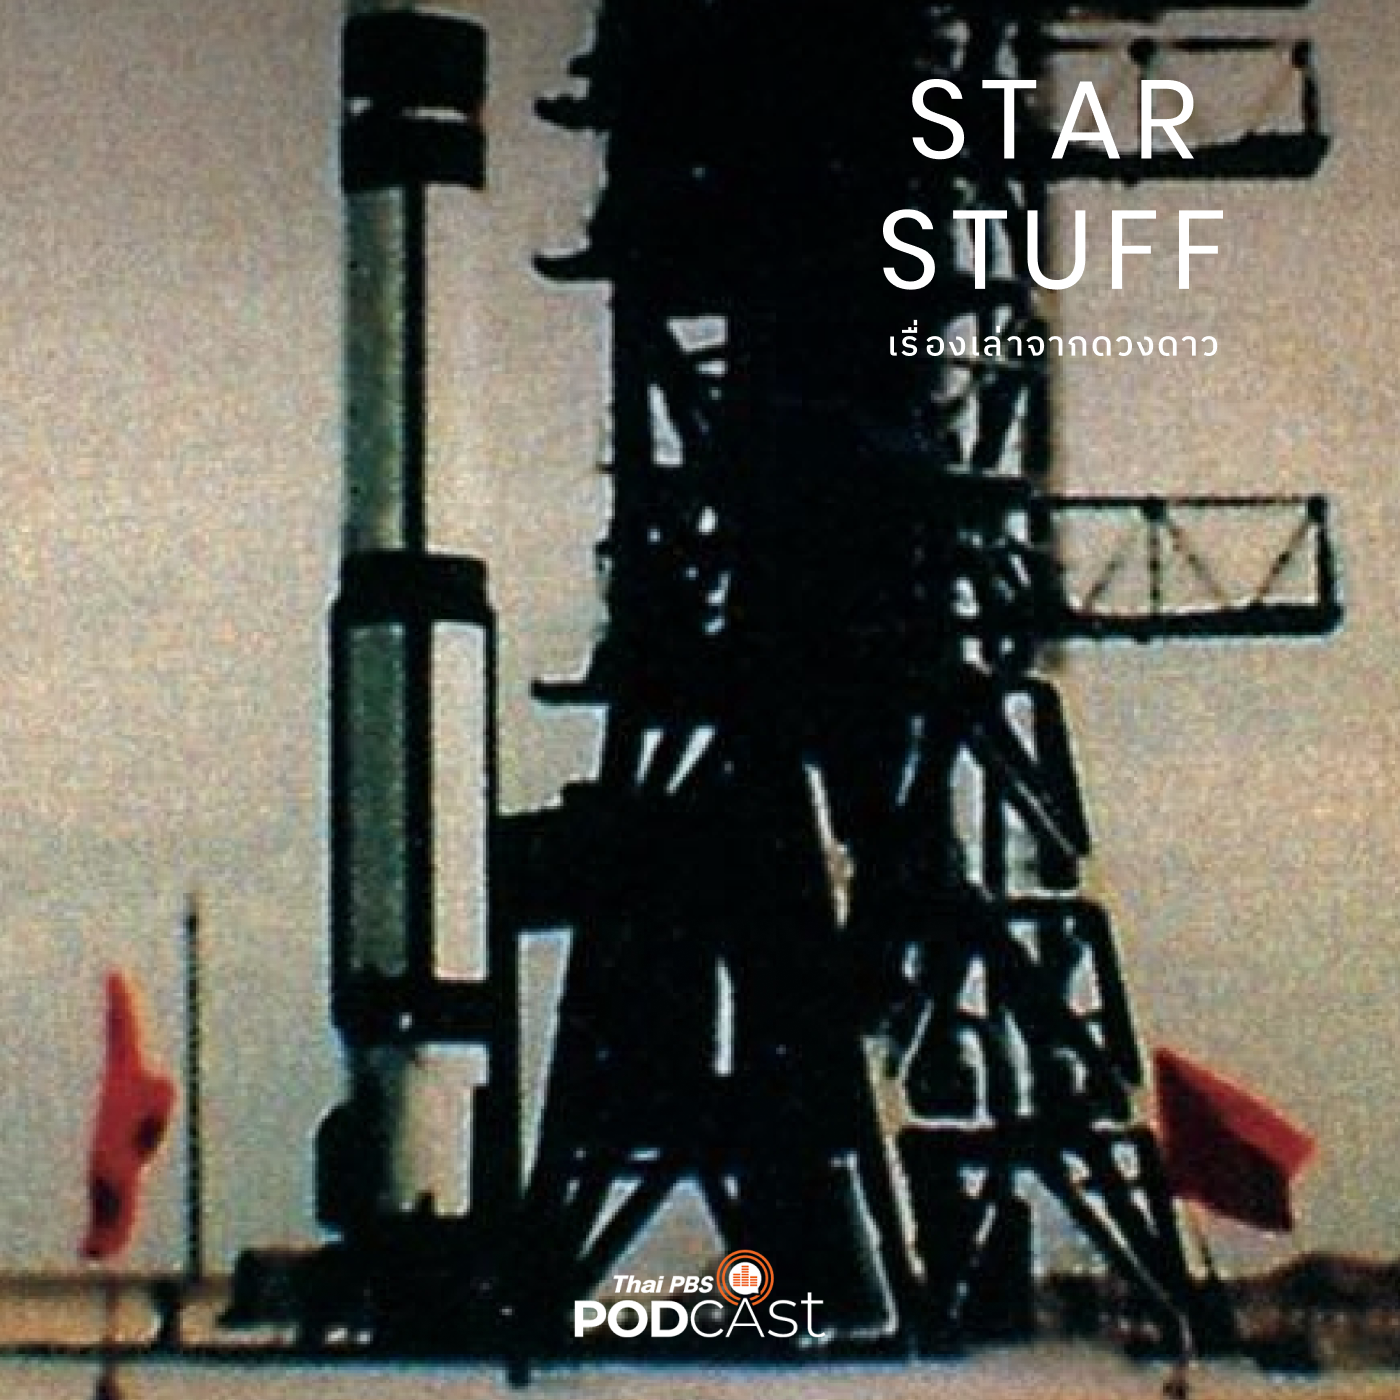 Starstuff เรื่องเล่าจากดวงดาว EP. 83: ประวัติศาสตร์อวกาศจีน ตอนที่ 1